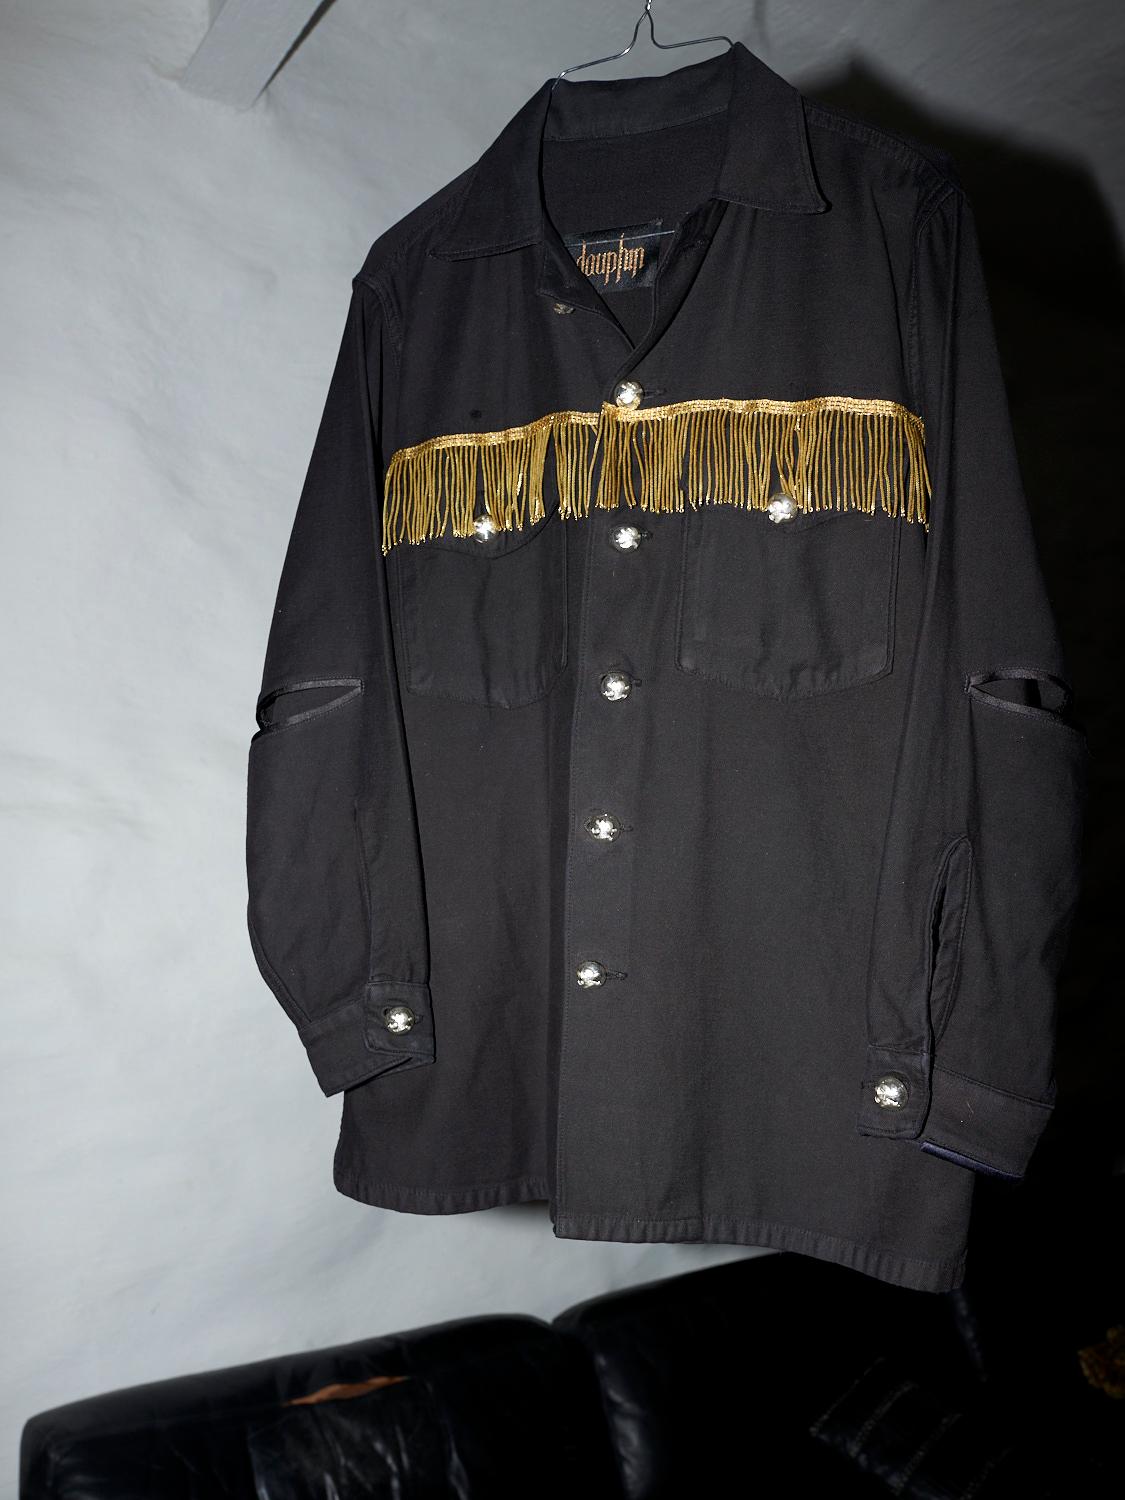 Embellished Fringe Jacket Black Silver Buttons Military Shirt J Dauphin 5